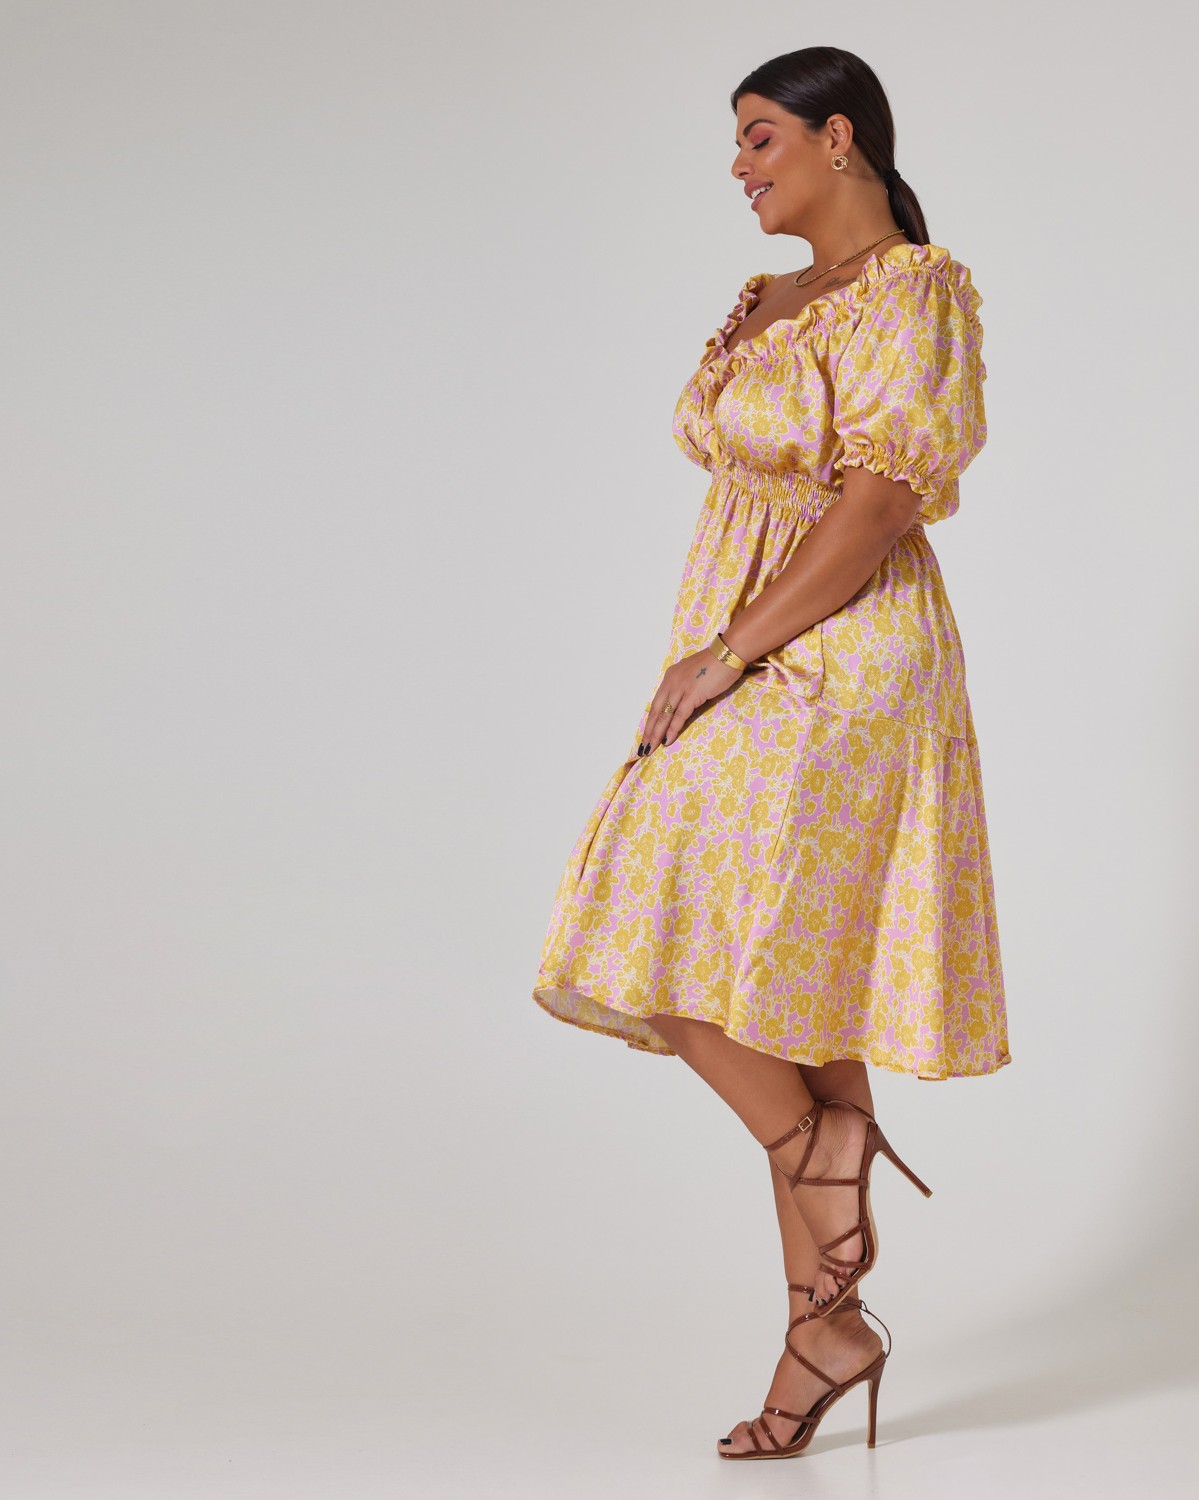 Φόρεμα Σατέν Με Σφηκοφωλιά Στη Μέση Εμπριμέ Ροζ-Κίτρινο